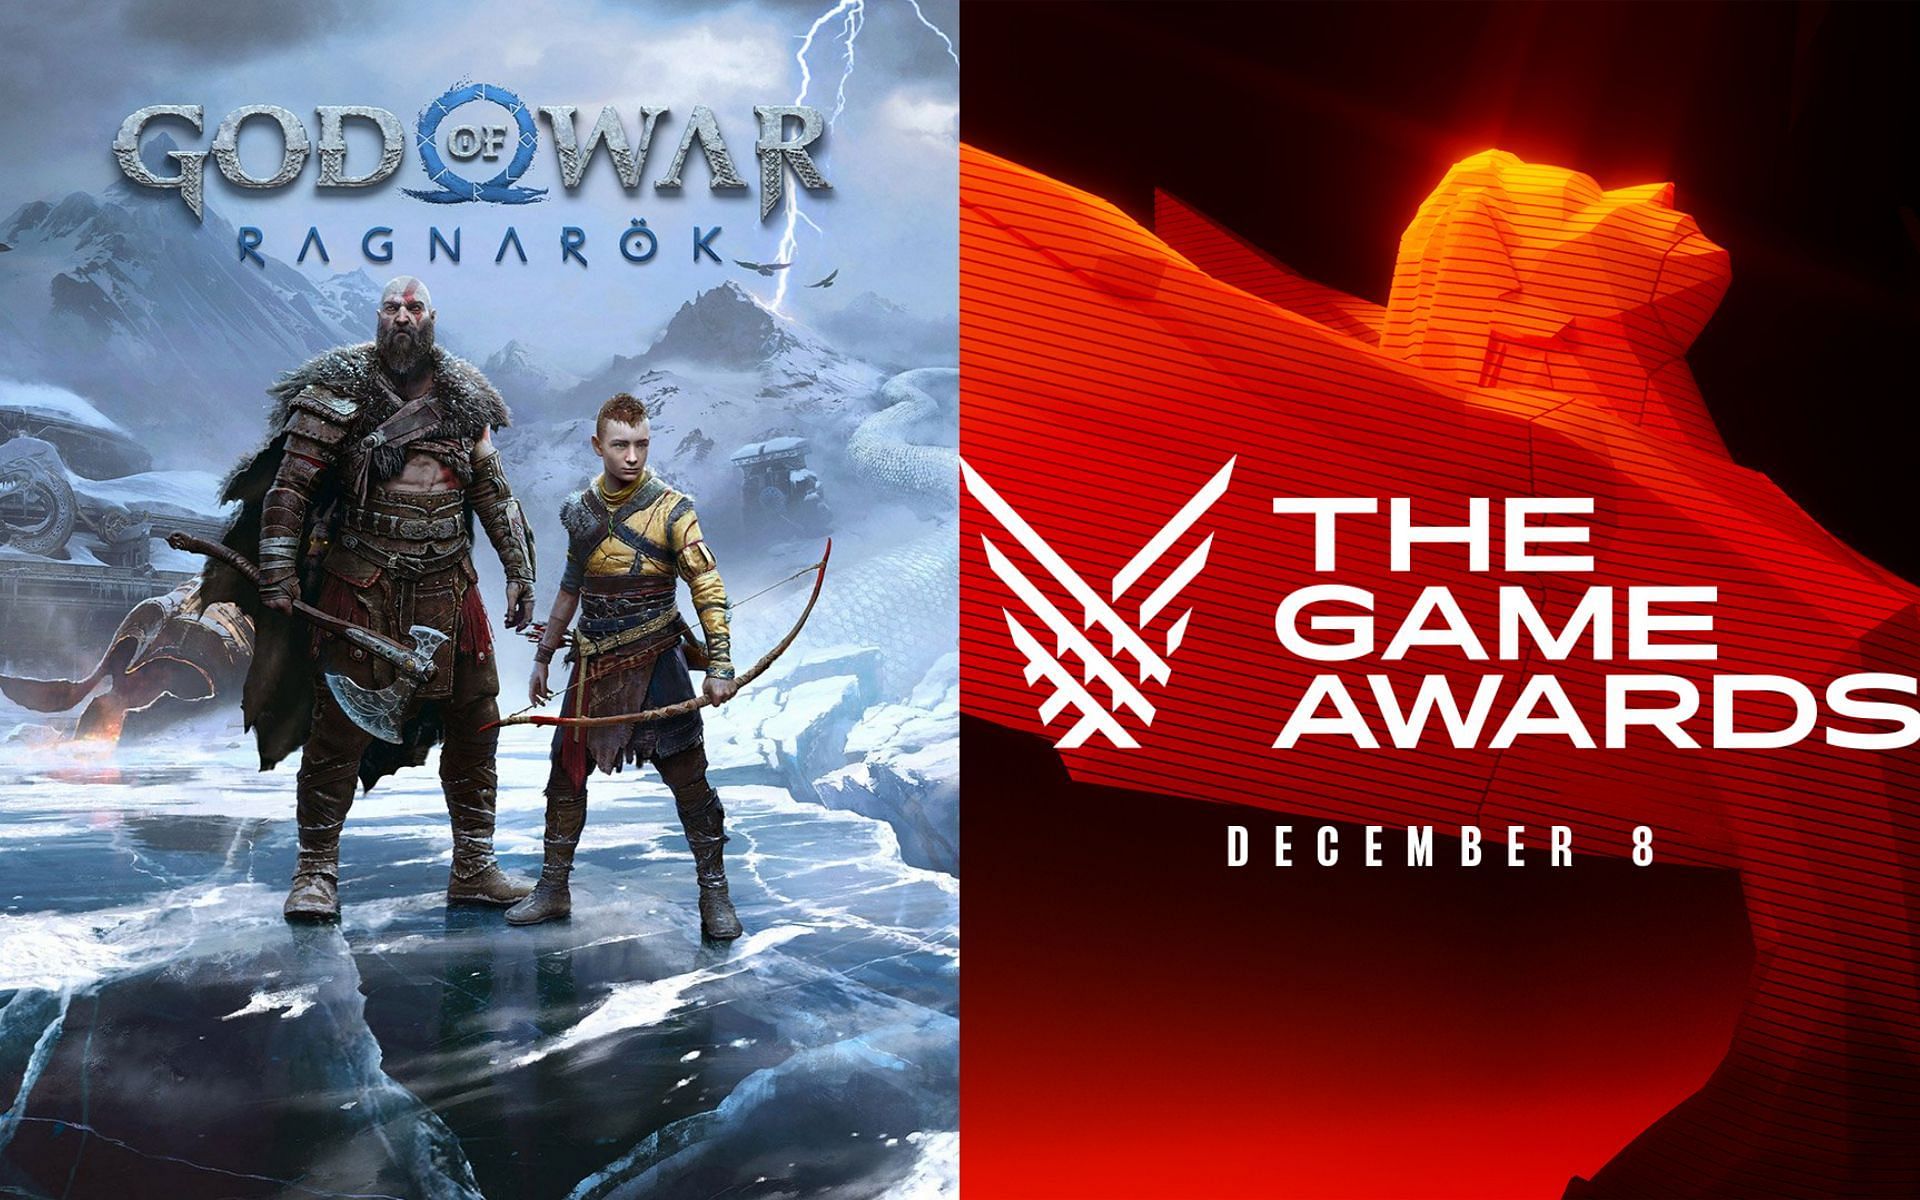 Game Awards 2022 winners: Where to buy Elden Ring, God of War Ragnarok